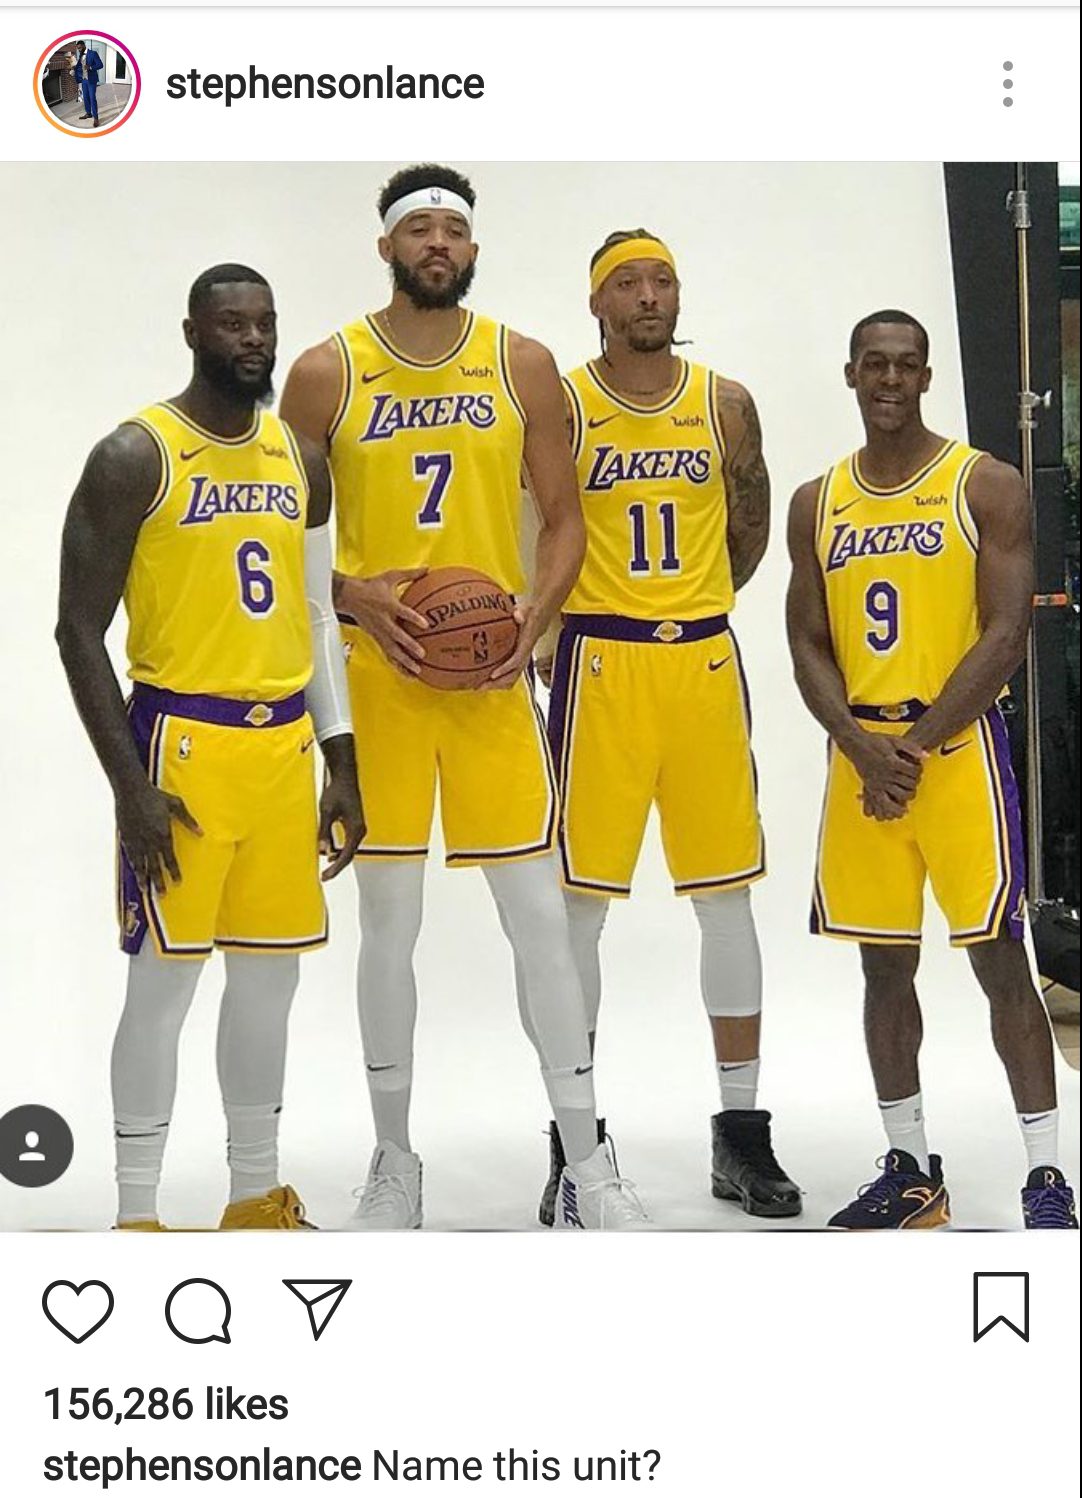 Lance Stephenson, LeBron James are Los Angeles Lakers teammates